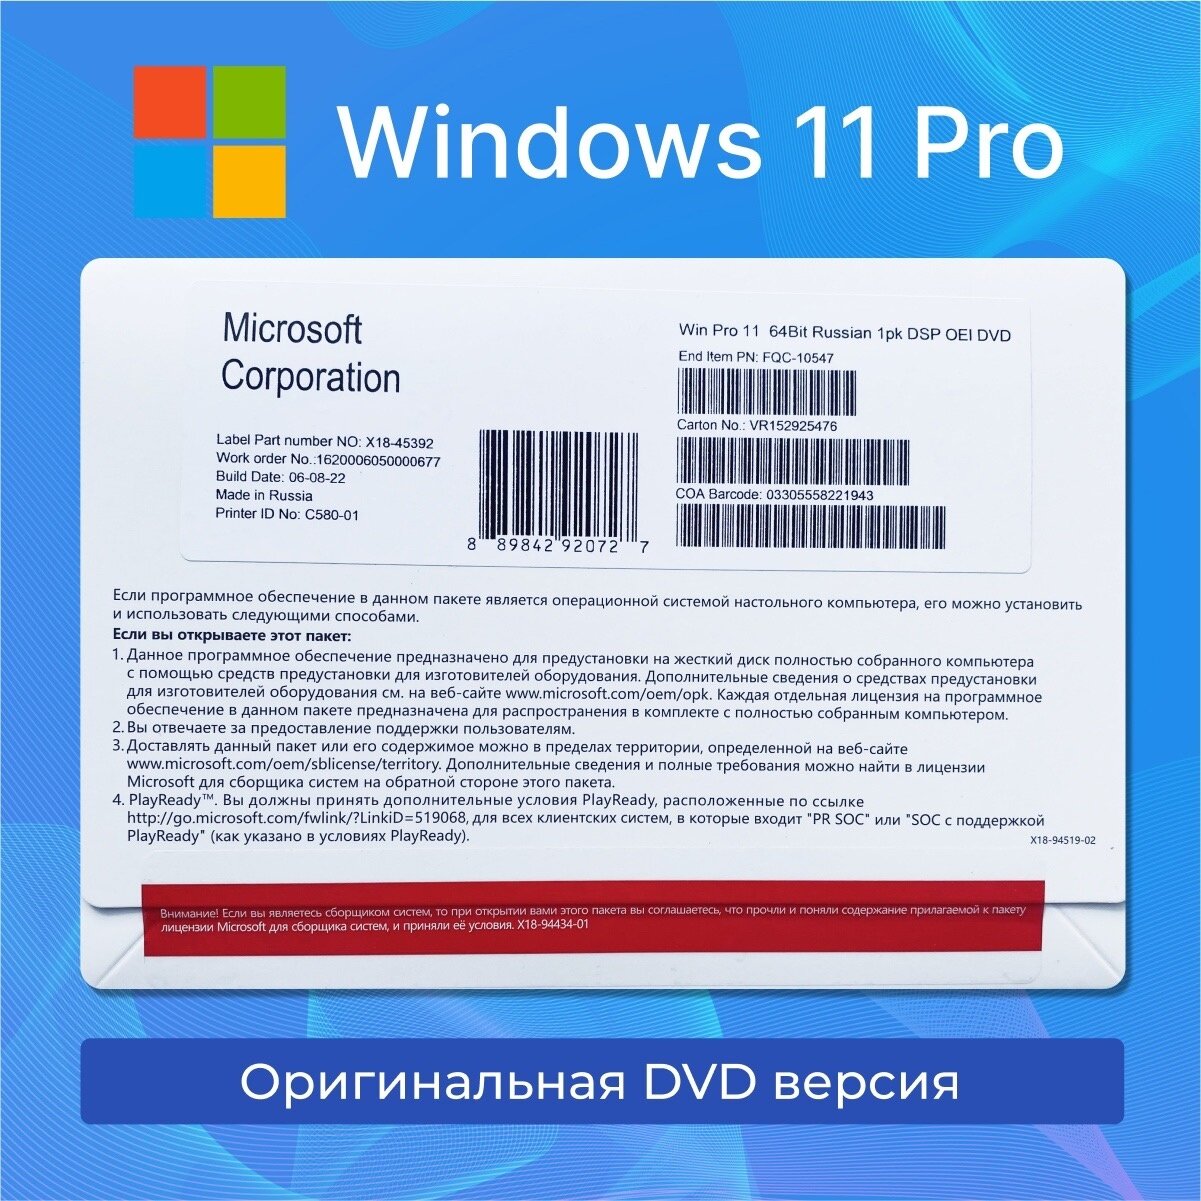 Microsoft Windows 11 Pro OEM, DVD-диск, Русская версия, 1 ПК, Бессрочная лицензия